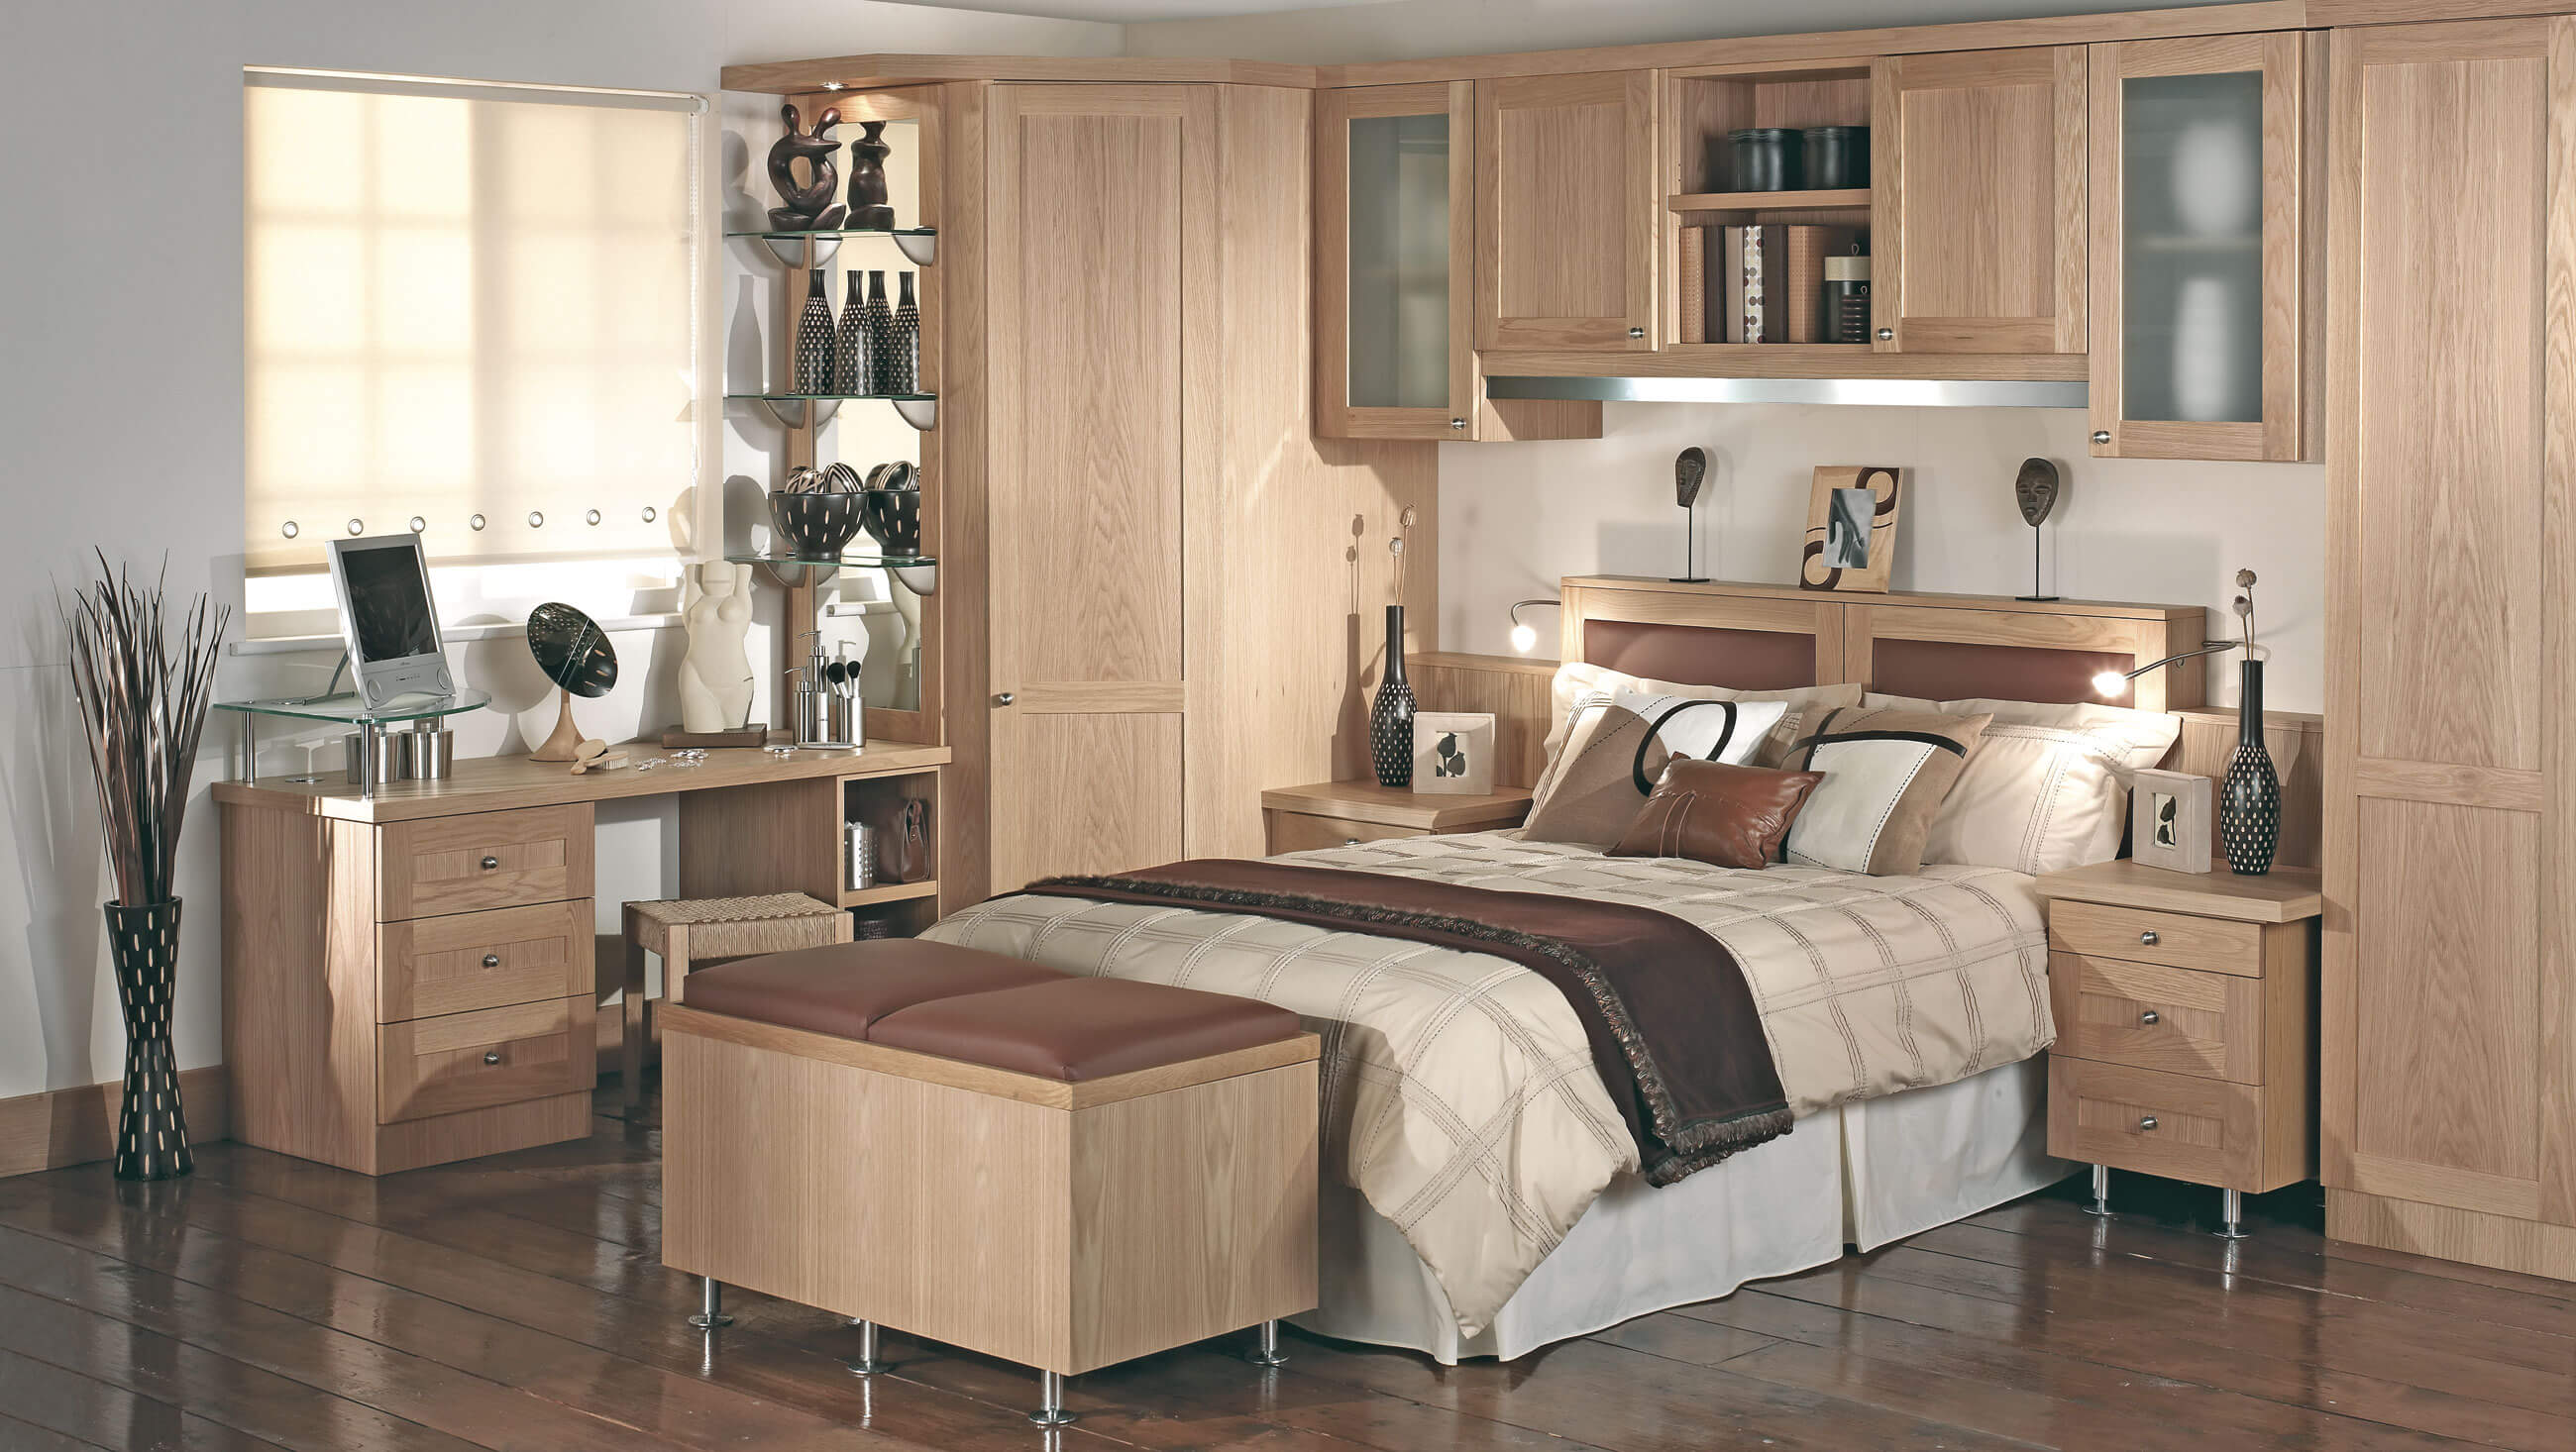 Shaker Bedroom Furniture - Neville Johnson